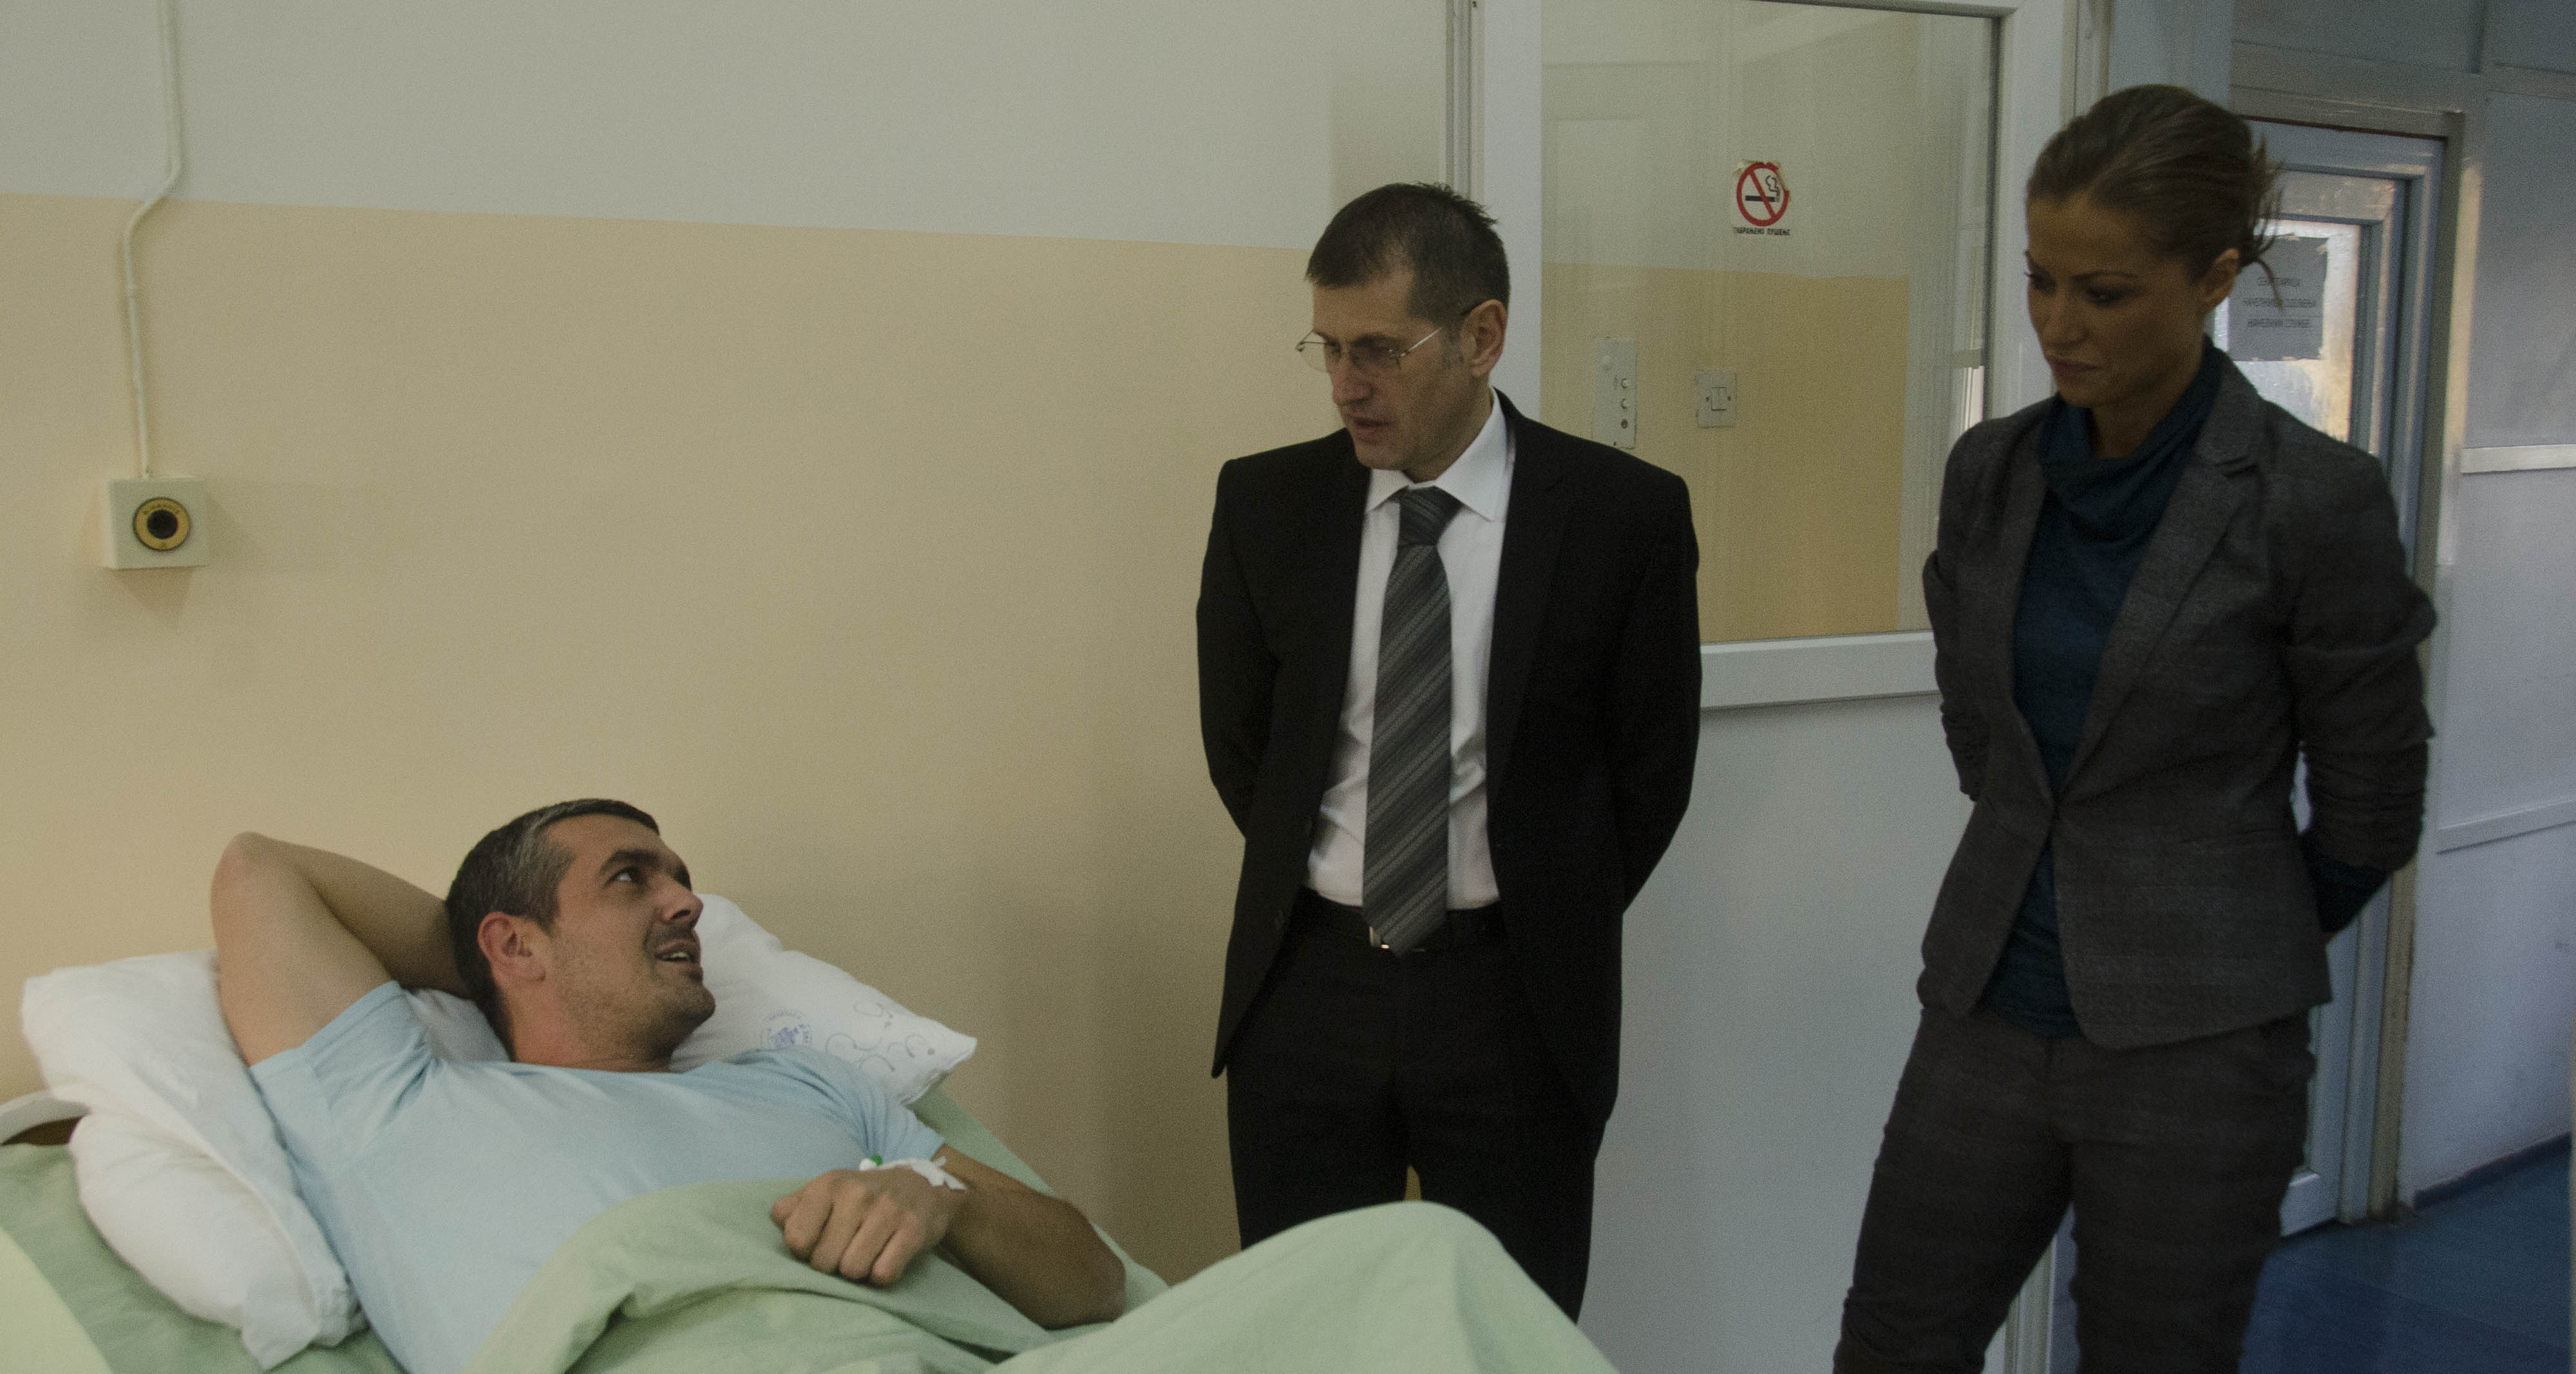 Ребић и Хркаловић обишли полицијског службеника који је повређен приликом хапшења нарко дилера у Београду